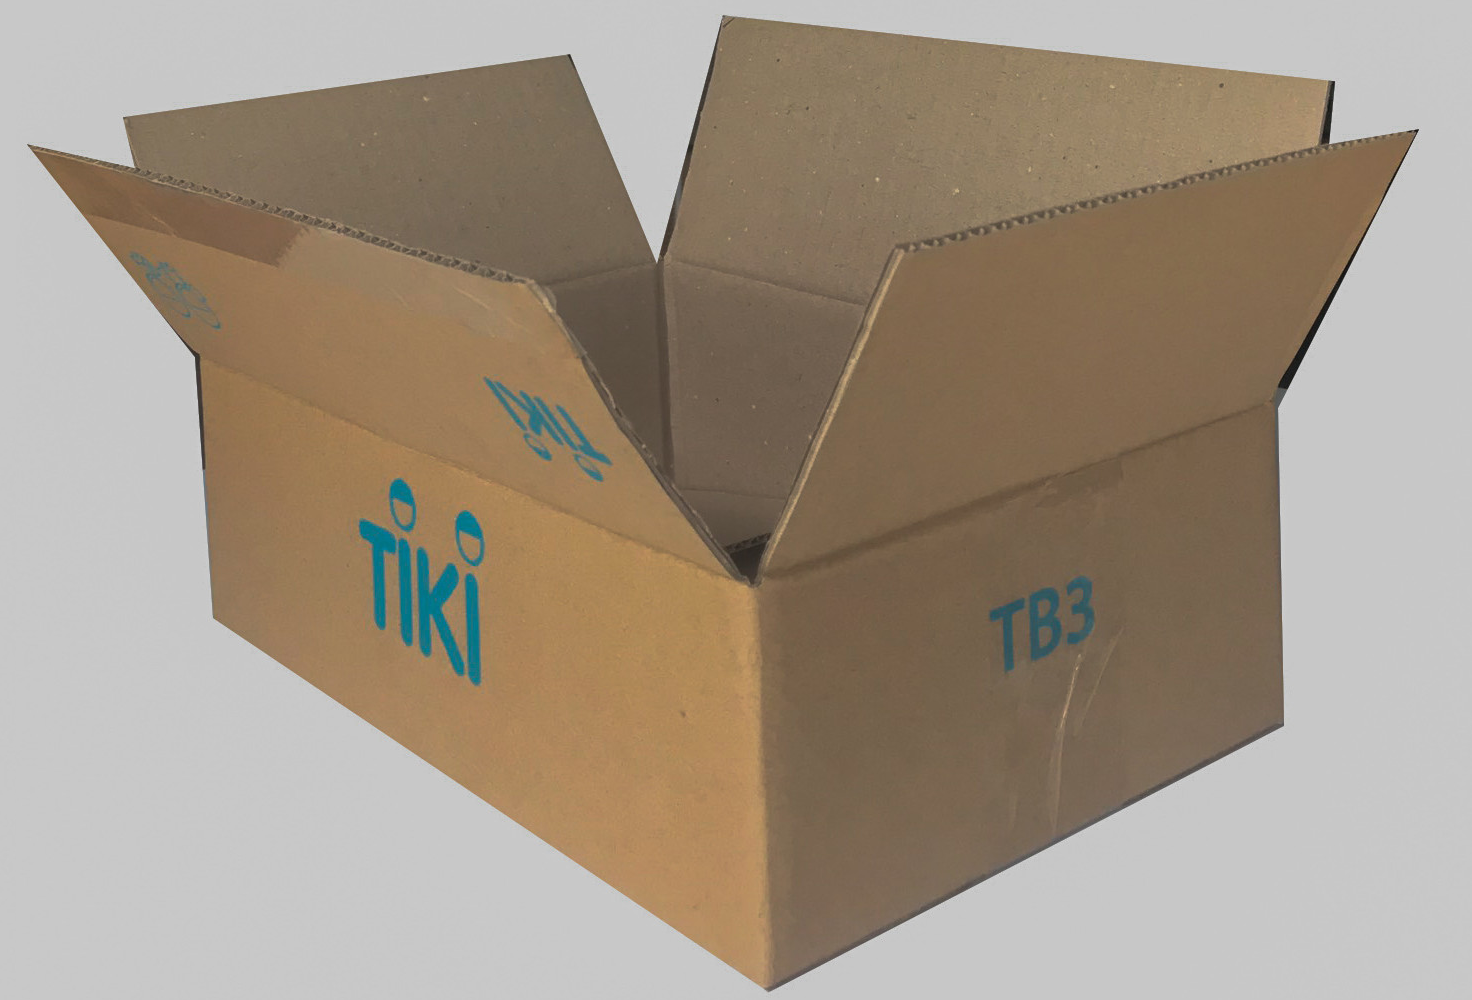 Hộp giấy giao hàng của Tiki đơn giản, tiện lợi nhưng lại nổi bật và dễ dàng nhận ra